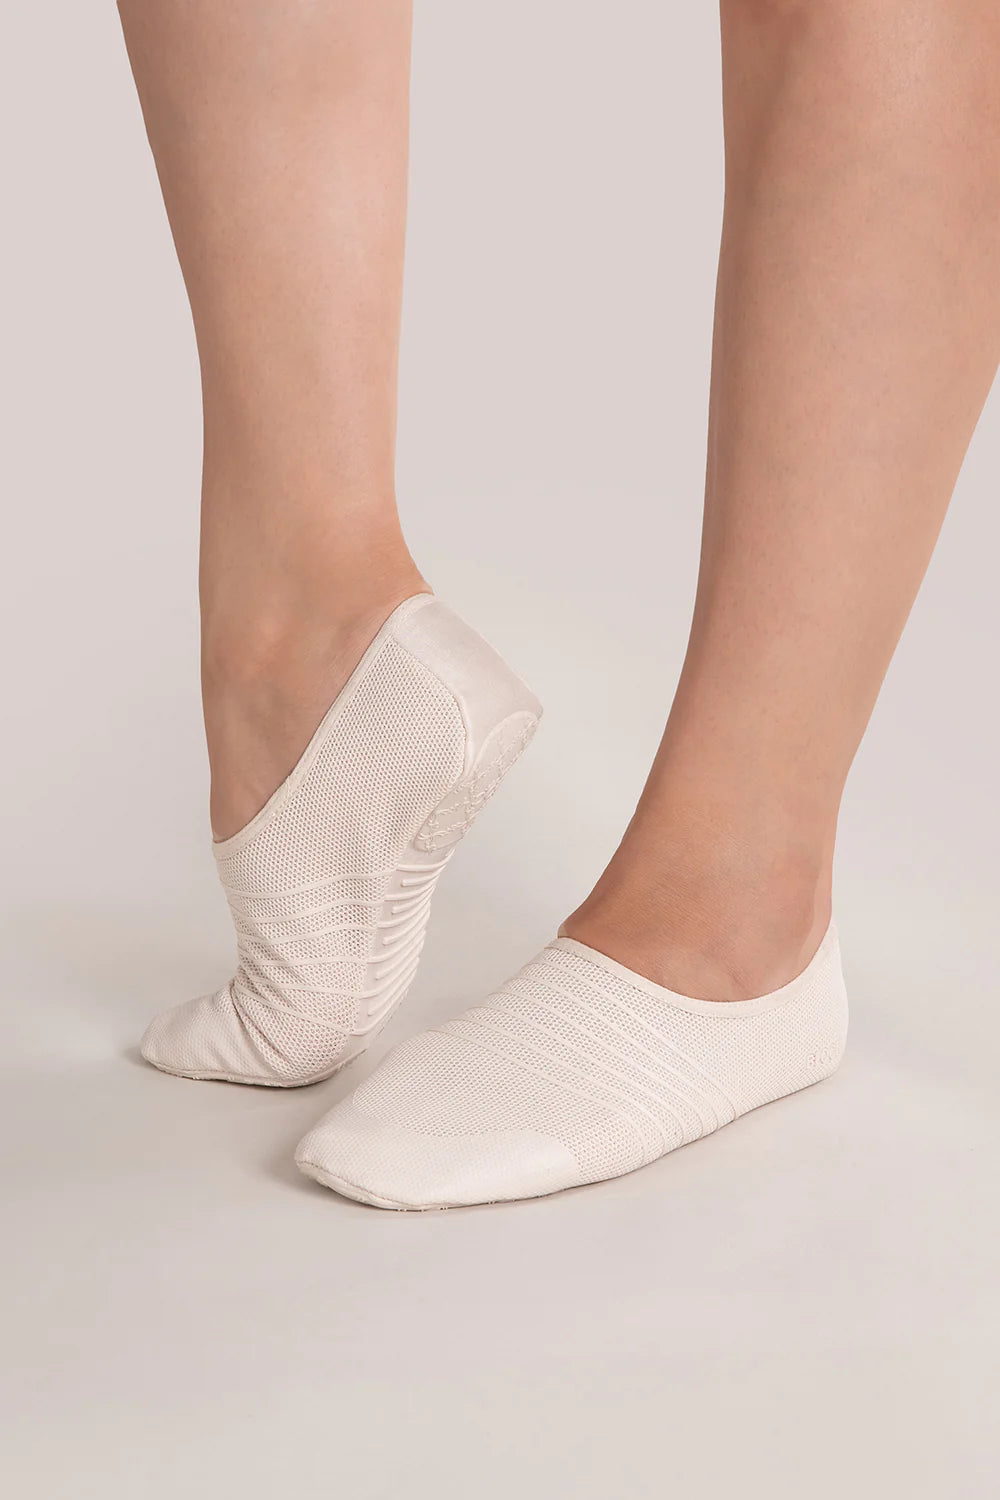 Flex (S2240) Shoe – Footlights Dance & Theatre Boutique